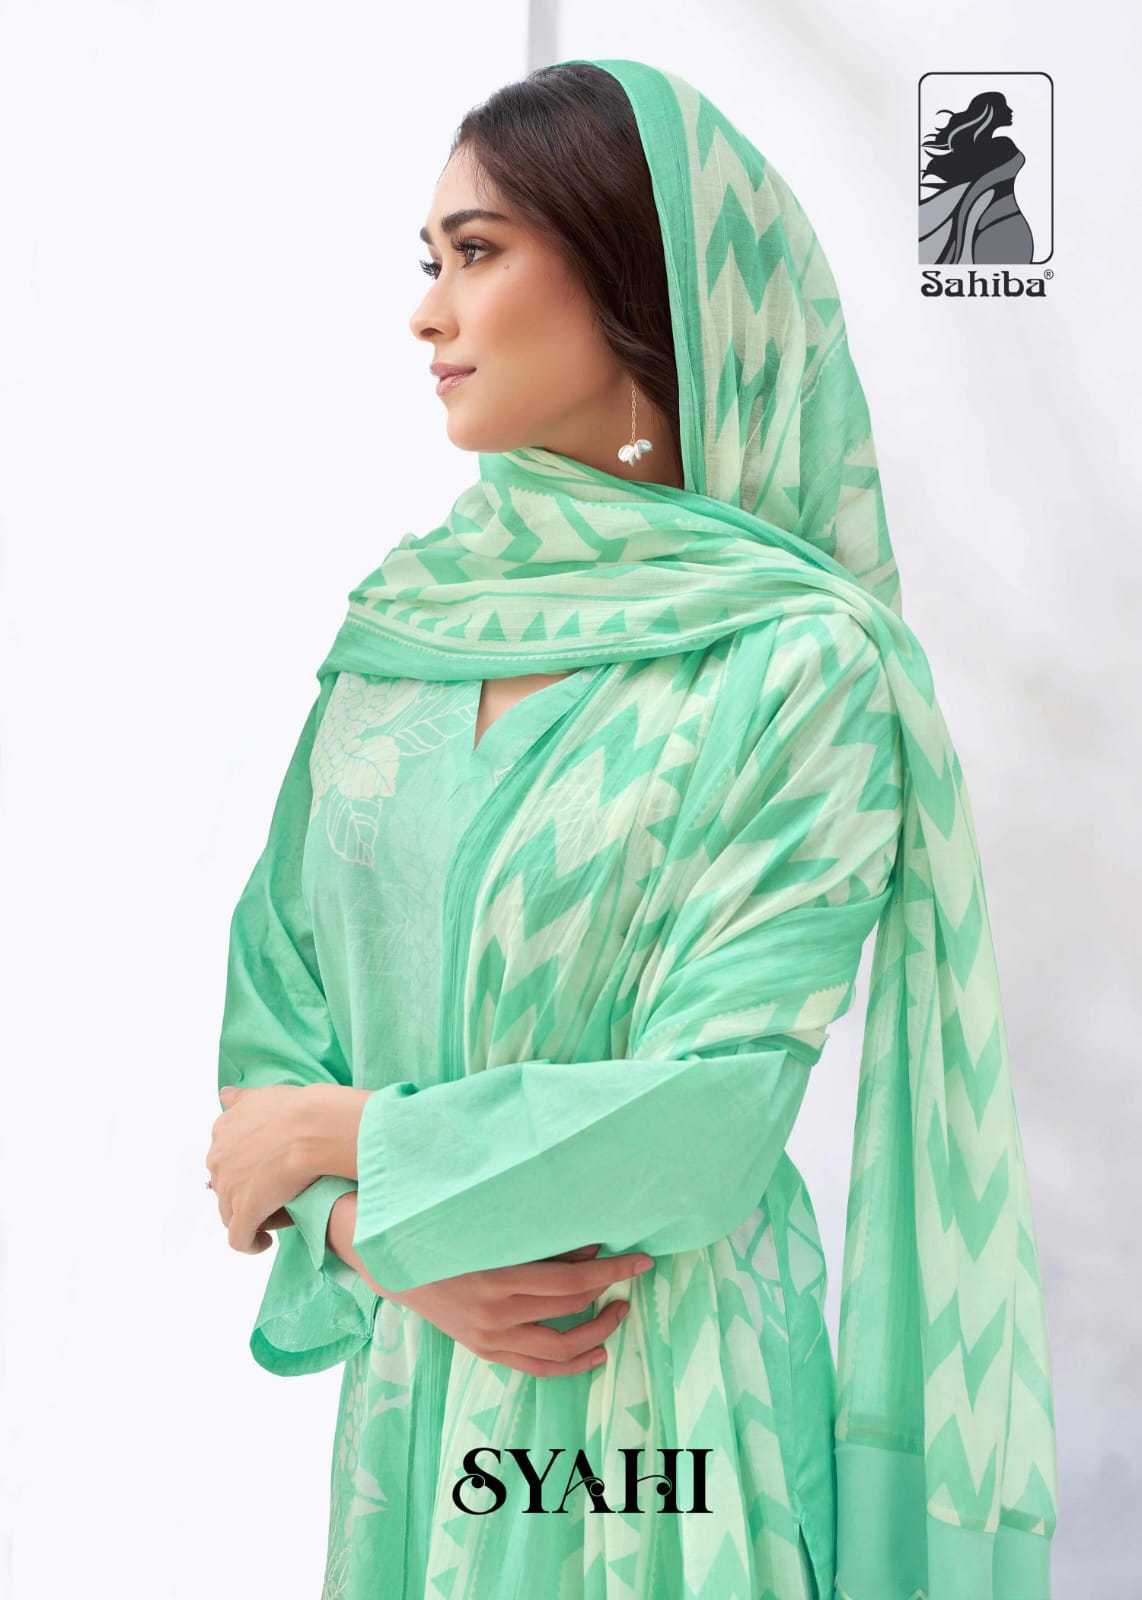 sahiba syahi classy look digital print dress material